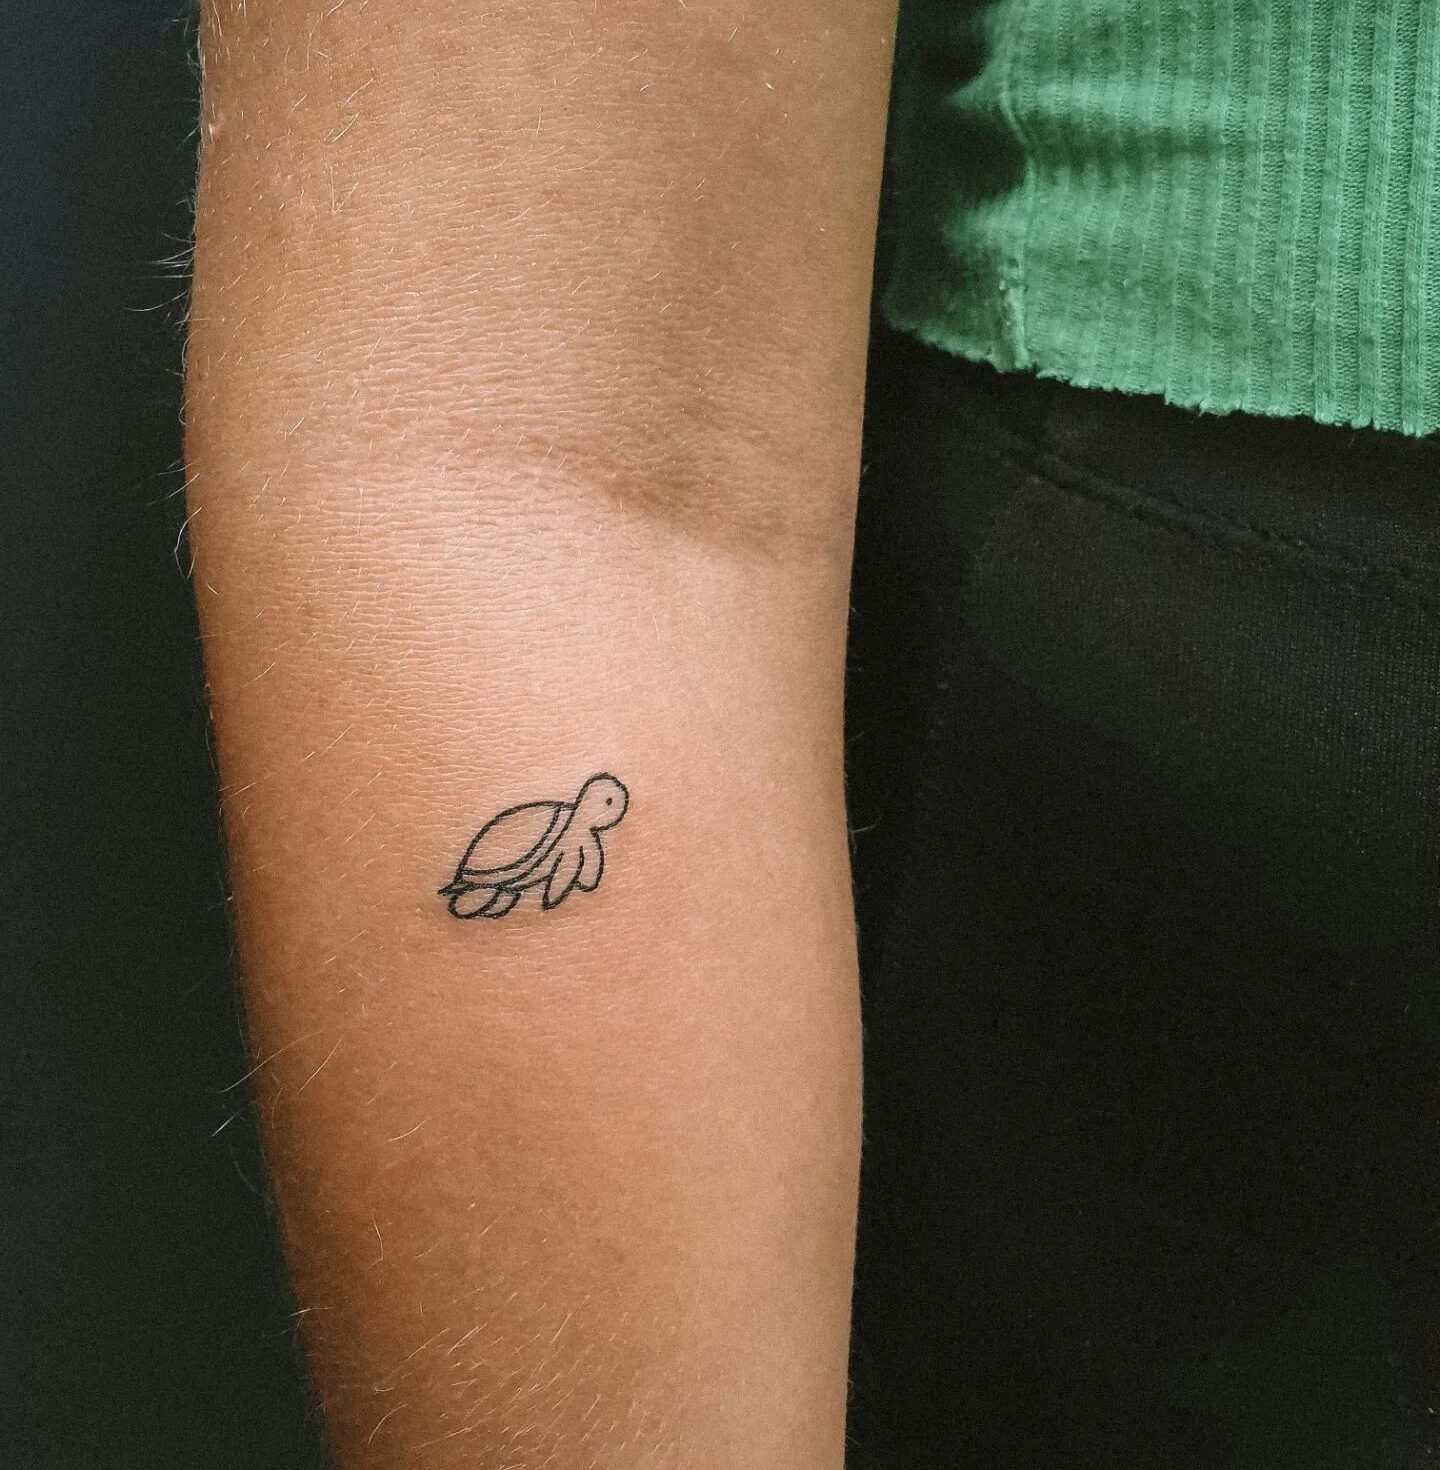 Minimalistic turtle tattoo on the forearm